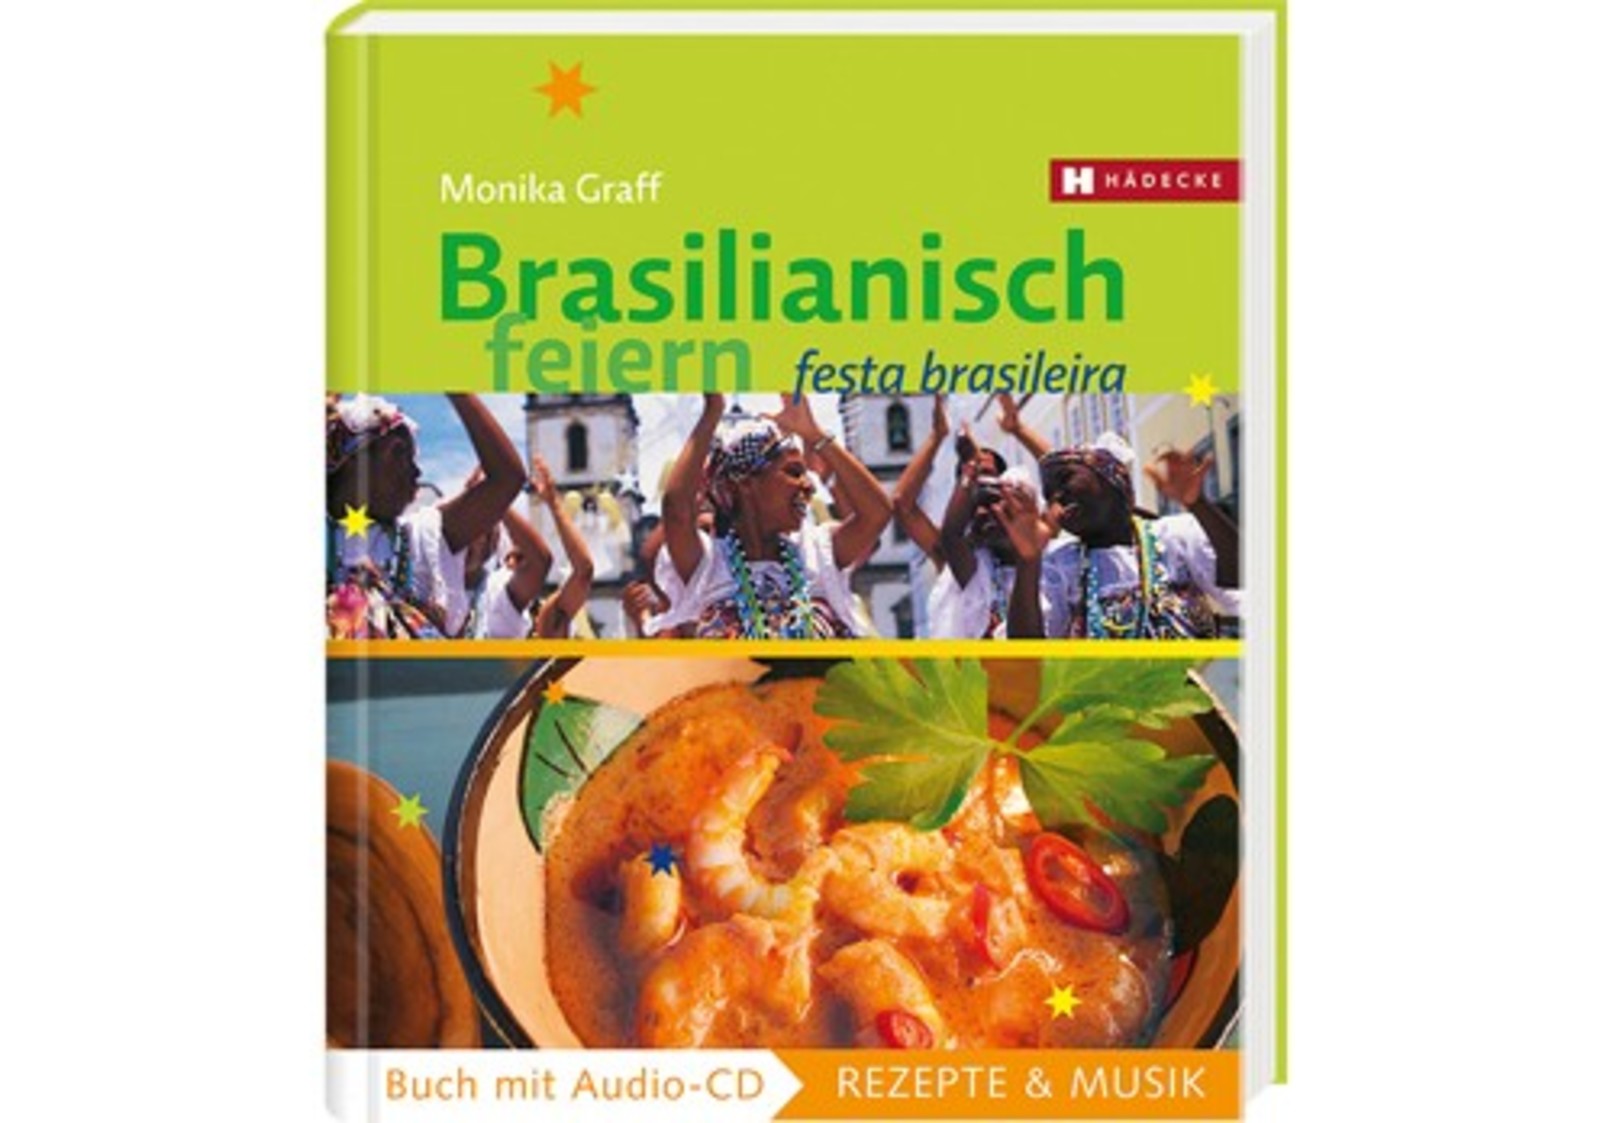 Wir suchen das beliebteste brasilianische Rezept!